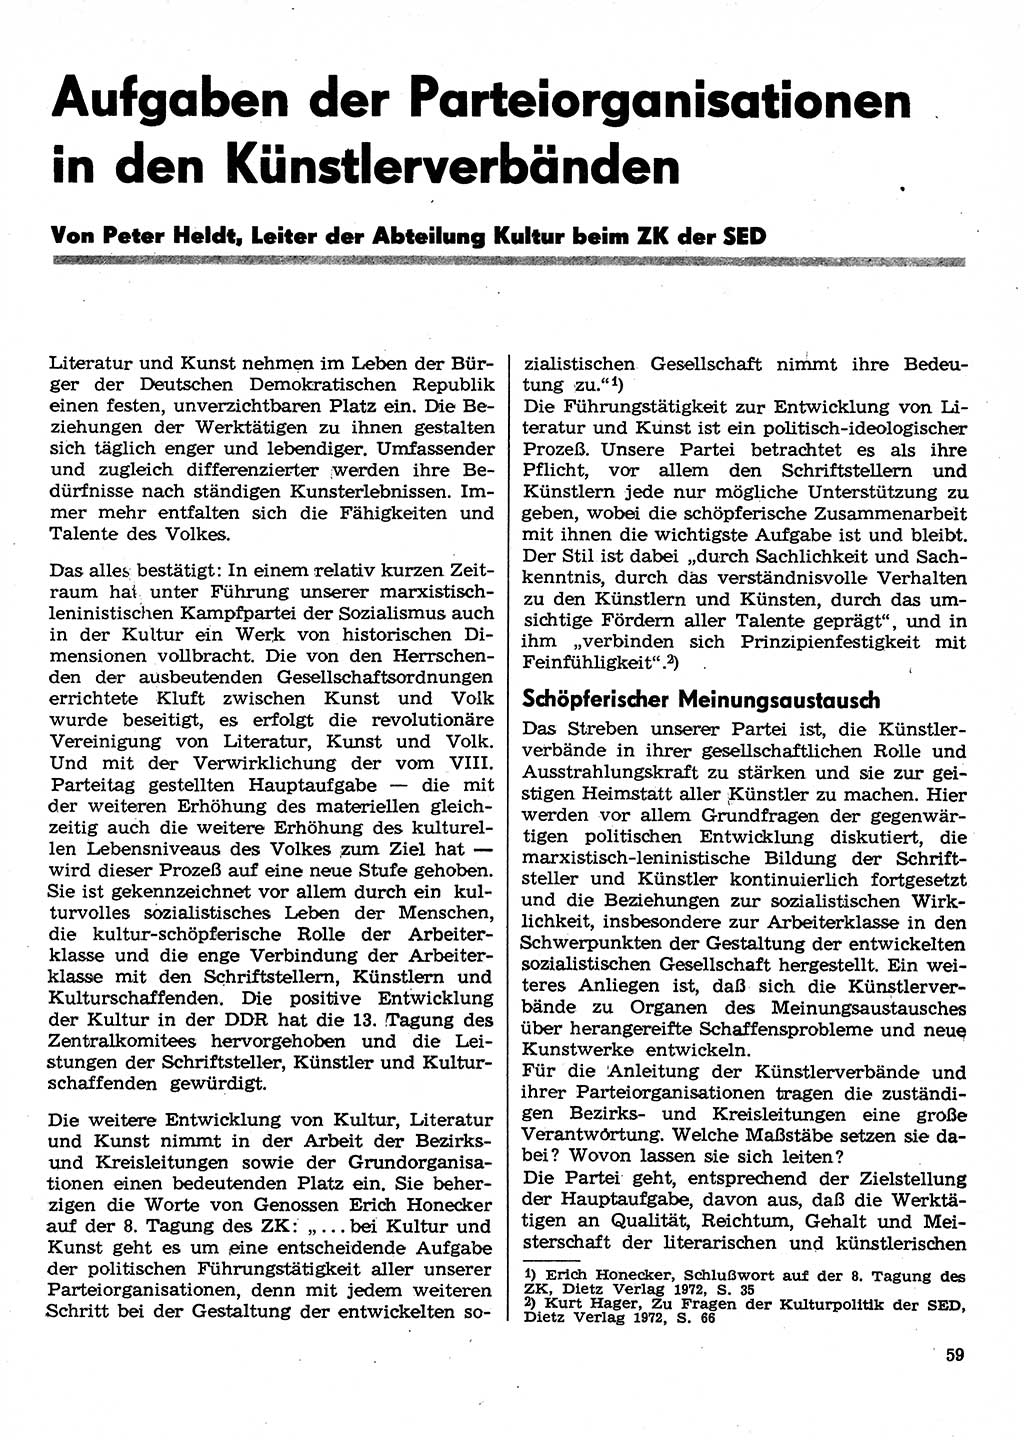 Neuer Weg (NW), Organ des Zentralkomitees (ZK) der SED (Sozialistische Einheitspartei Deutschlands) für Fragen des Parteilebens, 30. Jahrgang [Deutsche Demokratische Republik (DDR)] 1975, Seite 59 (NW ZK SED DDR 1975, S. 59)